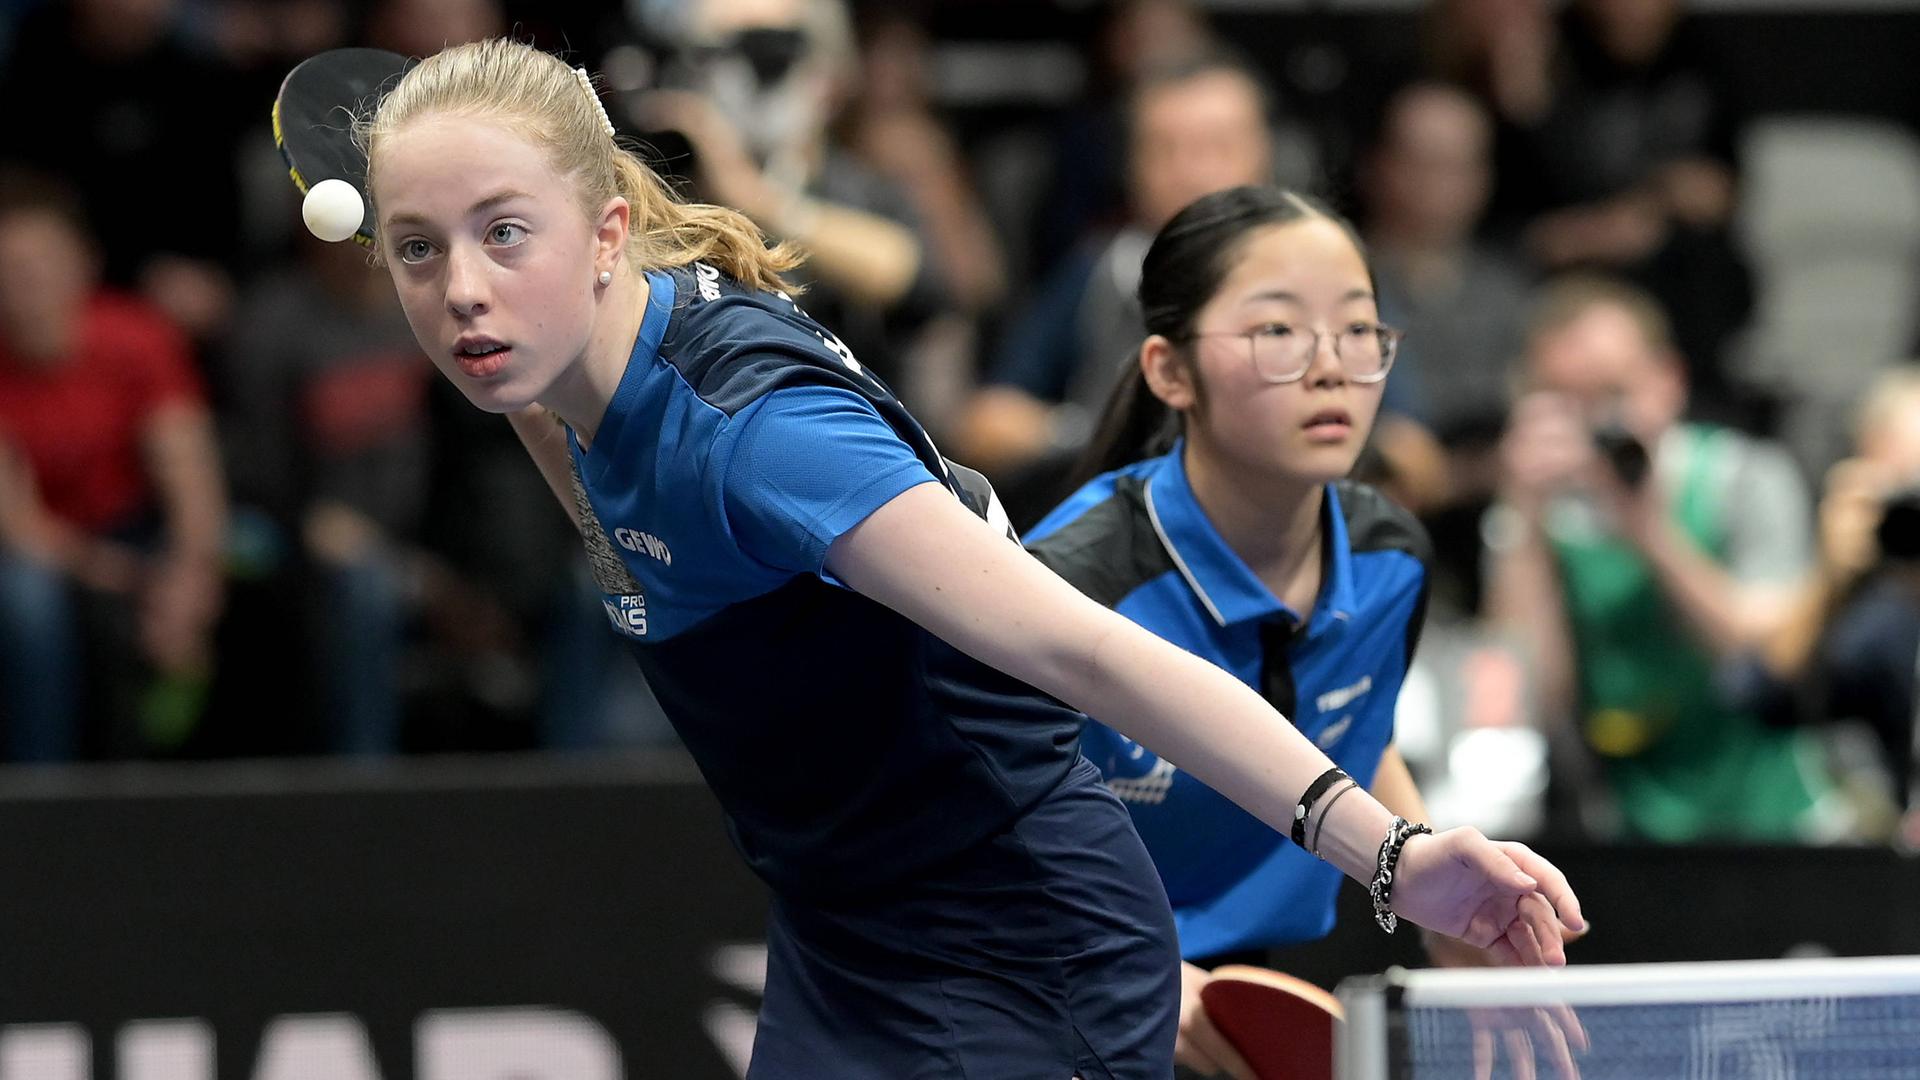 Das Foto zeigt zwei Tischtennis-Spielerinnen im Doppel. Es sind die 13-jährige Josephina Neumann und die gleichaltrige Koharu Itagaki.